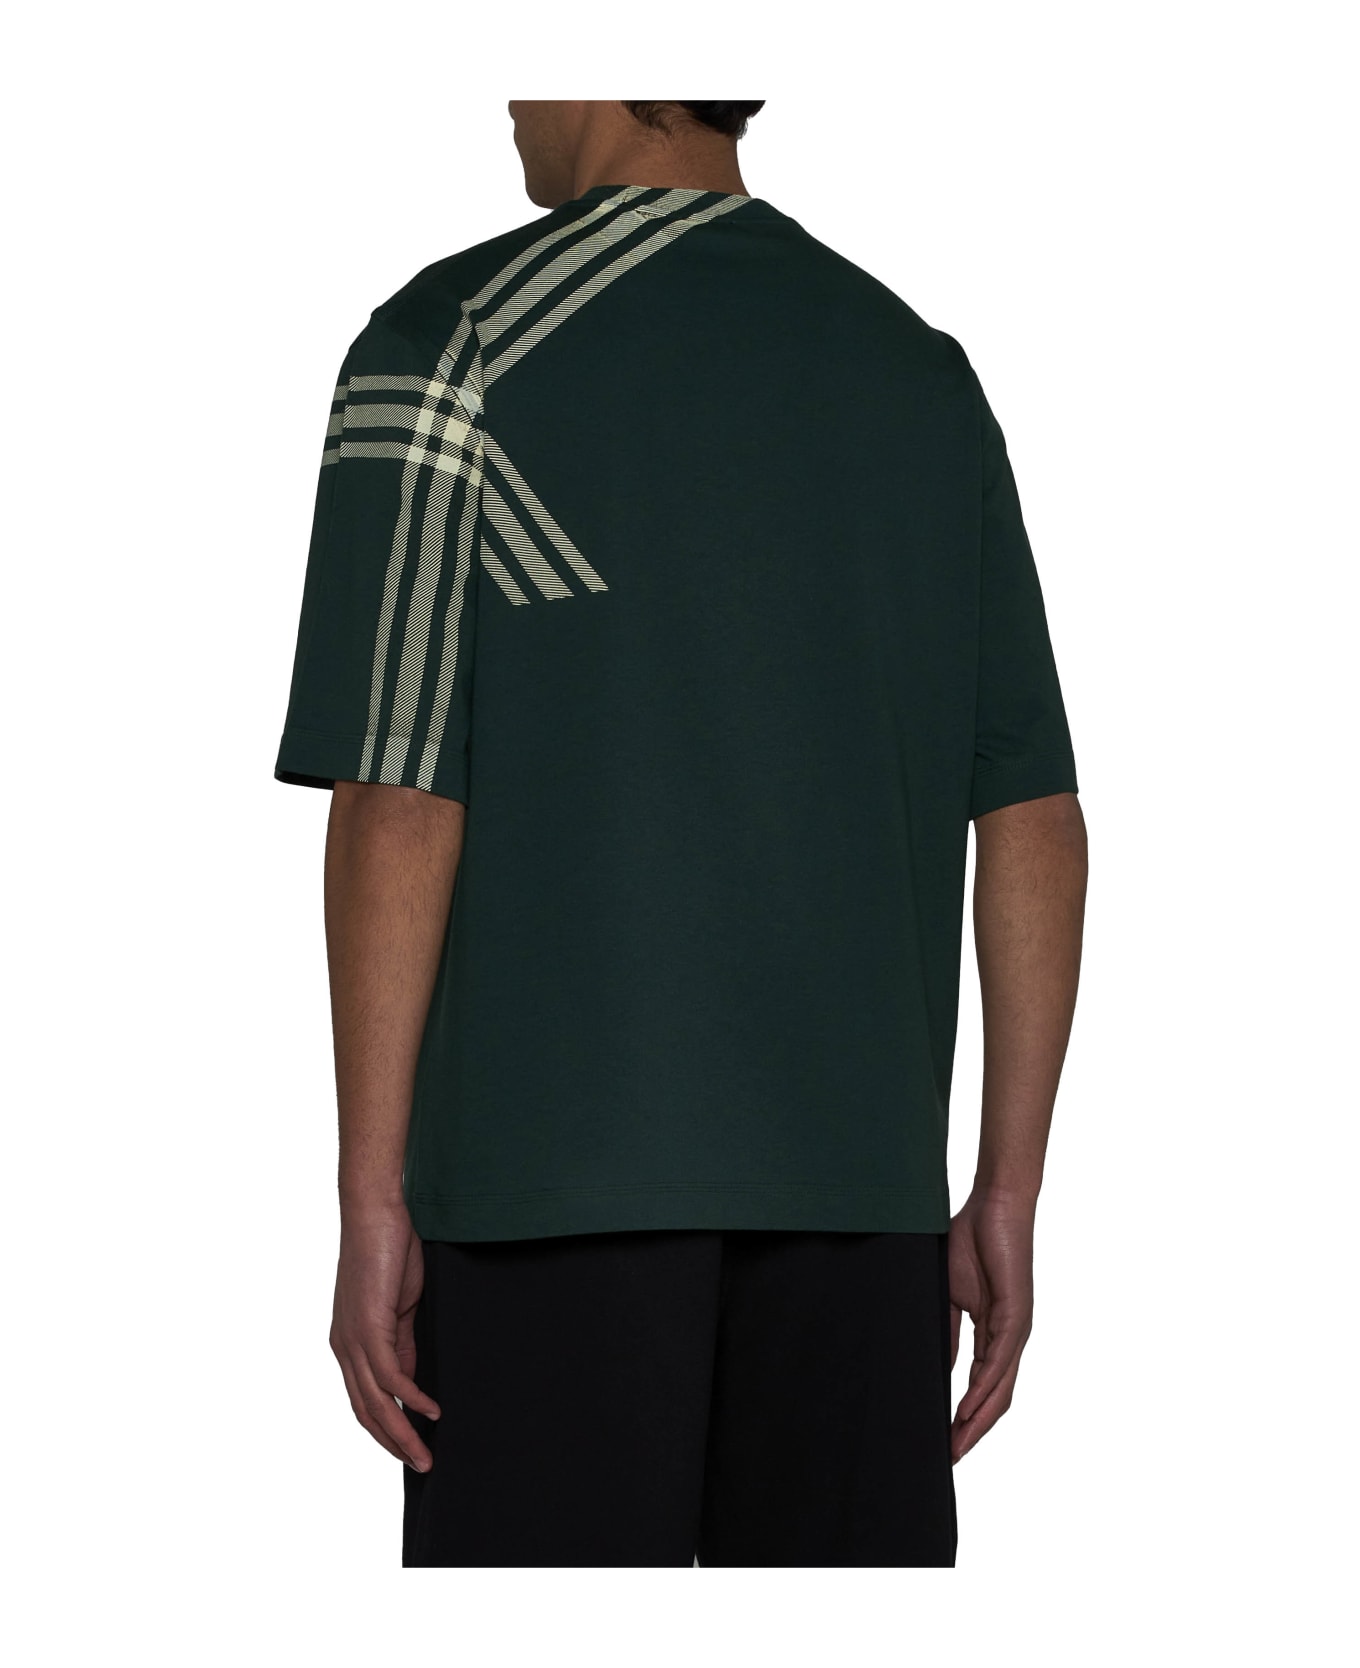 Burberry Green Cotton T-shirt - Green